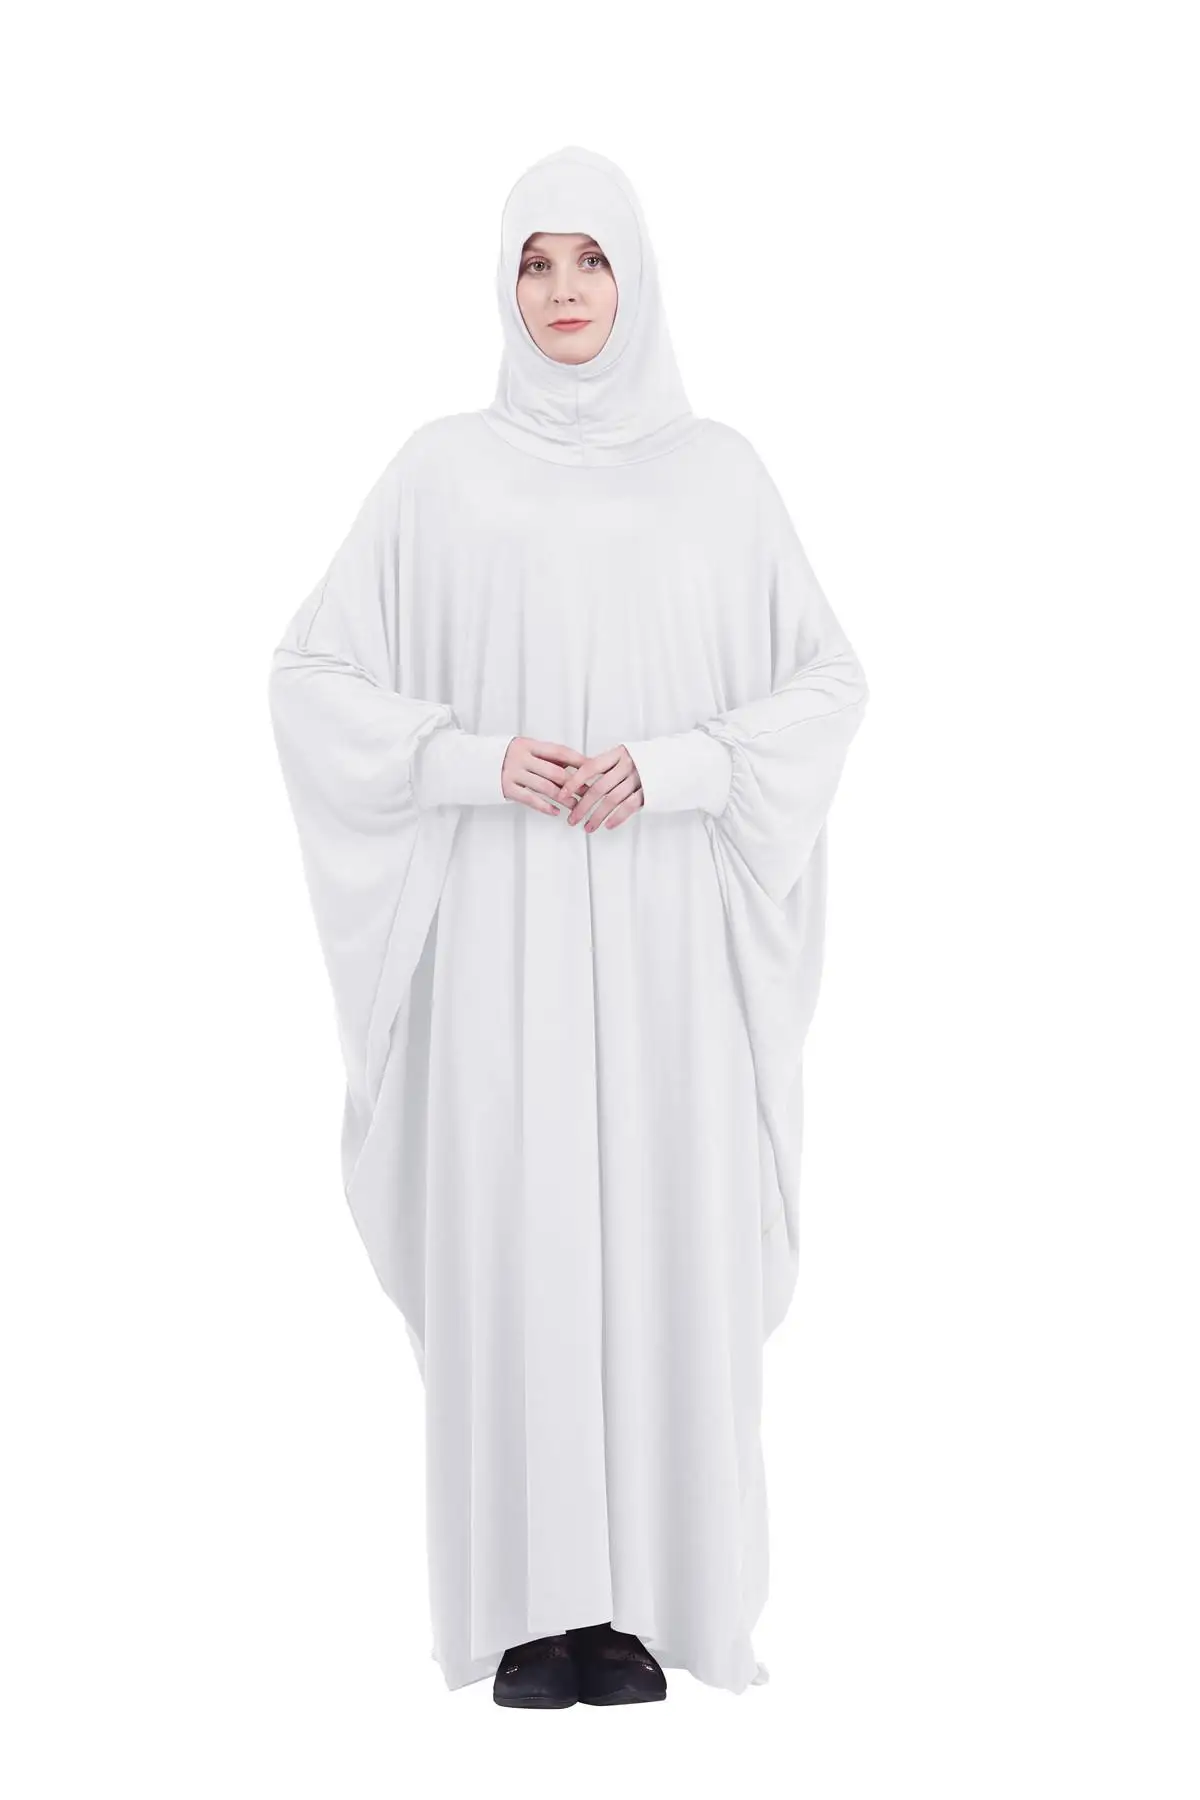 Официальное мусульманское Молитвенное платье, женское платье с капюшоном, длинное Молитвенное платье-кимоно с турецким намазом, абайя, хид... от AliExpress WW